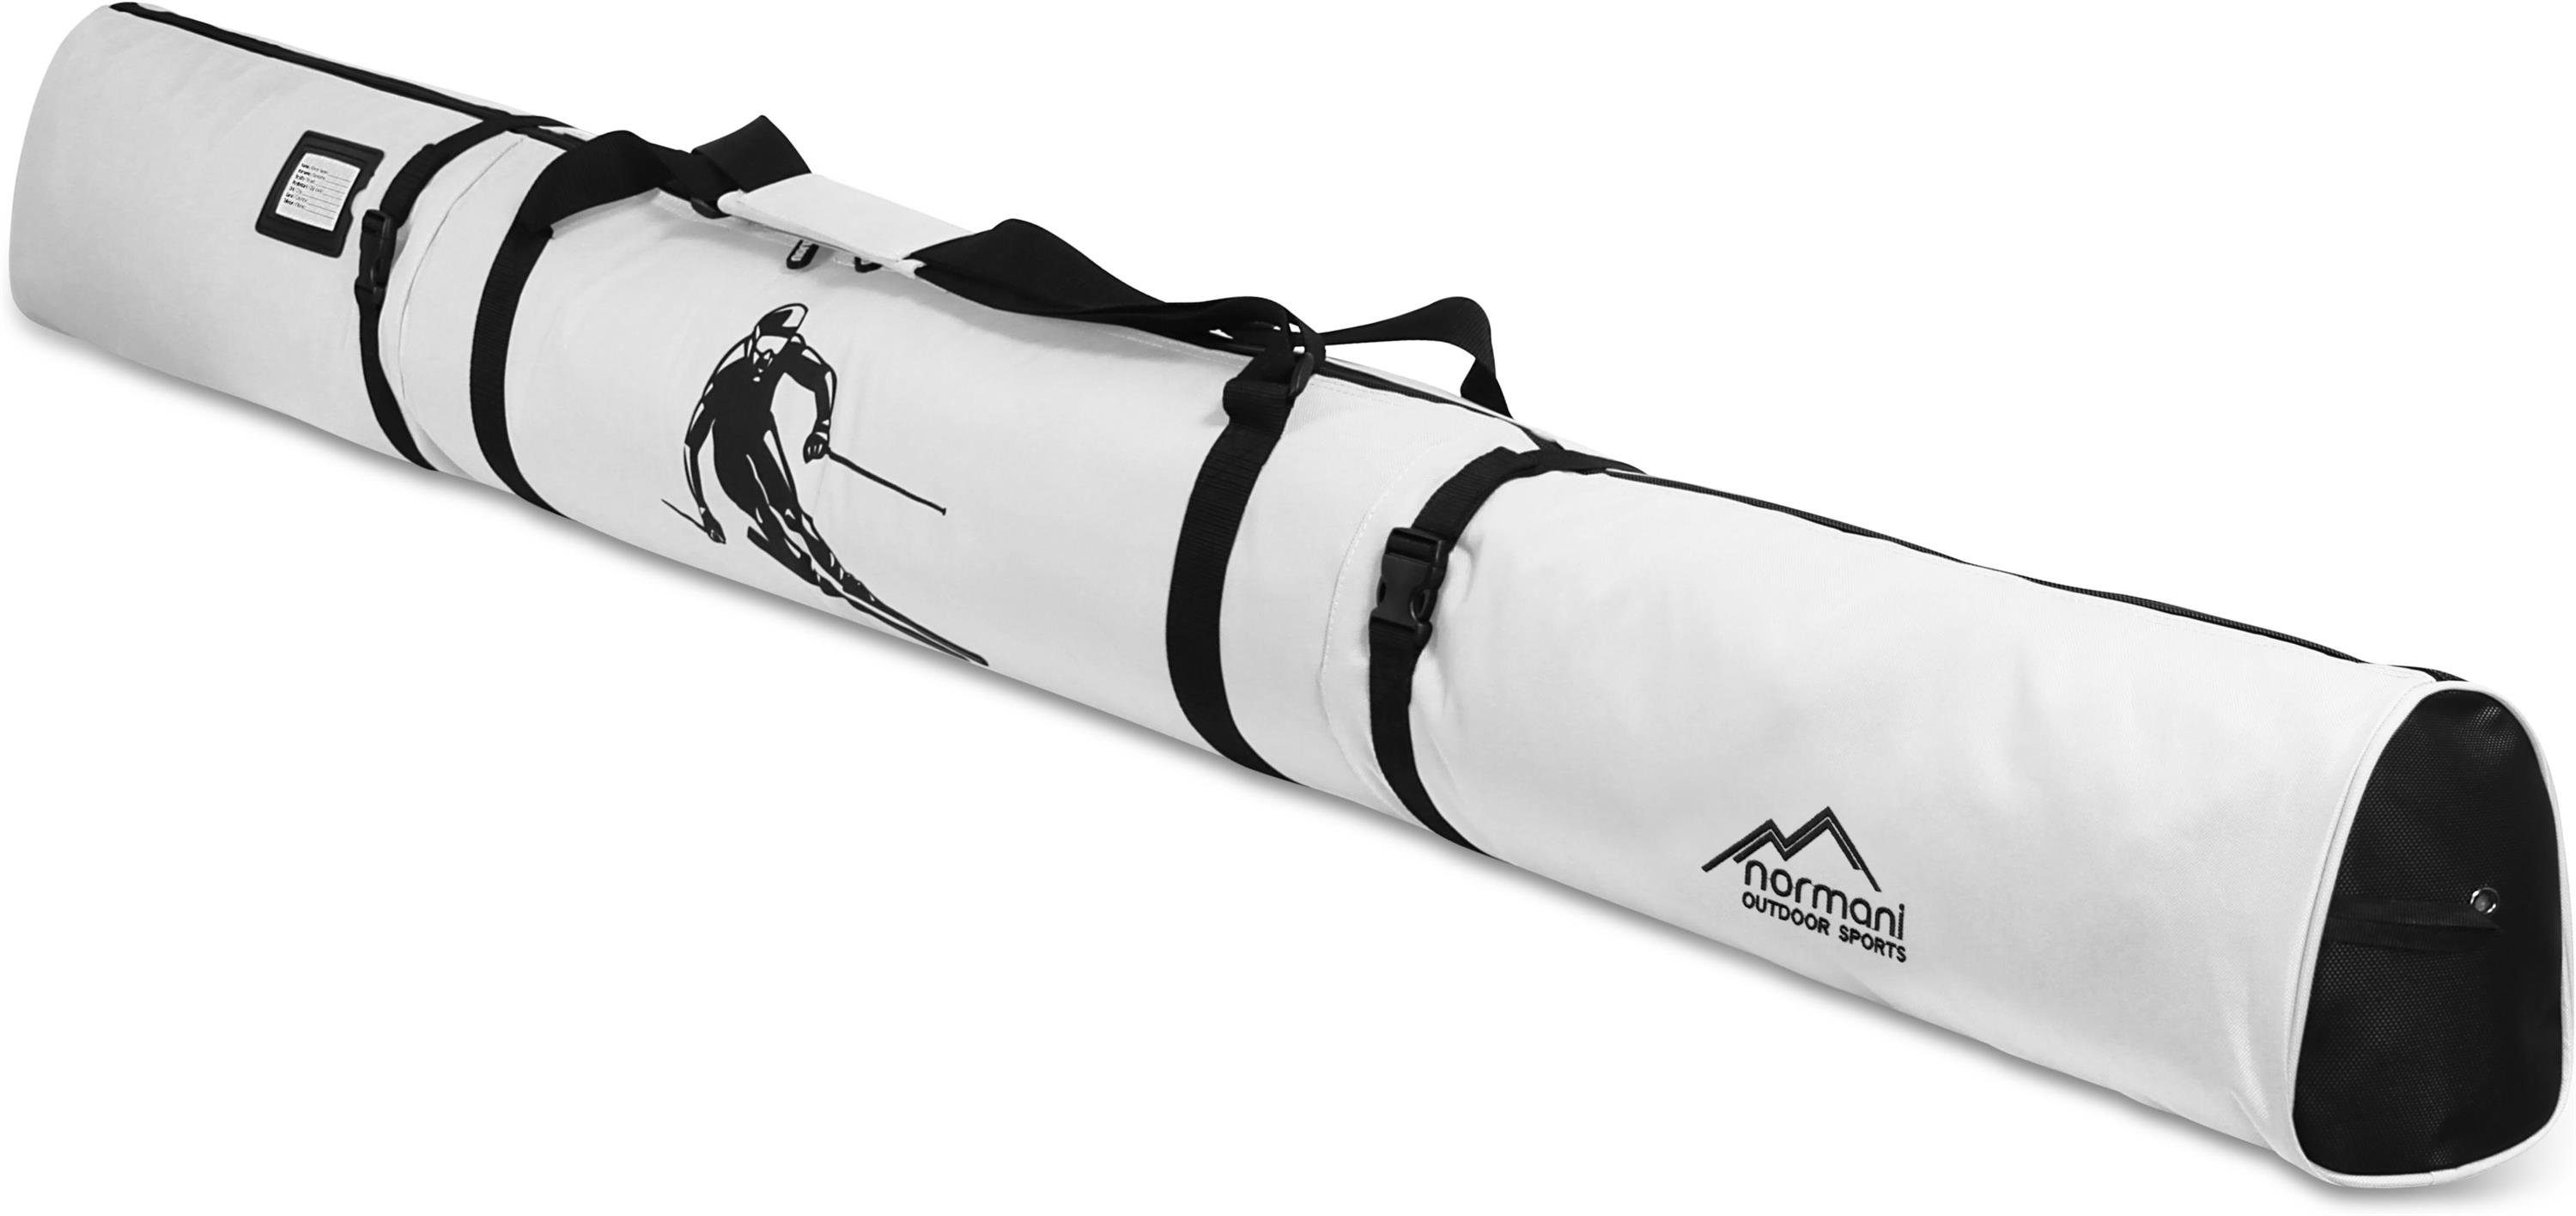 Aufbewahrungstasche Skitasche Run Skitasche und Skier Sporttasche für Alpine Transporttasche normani Skistöcke Skihülle 170, Weiß